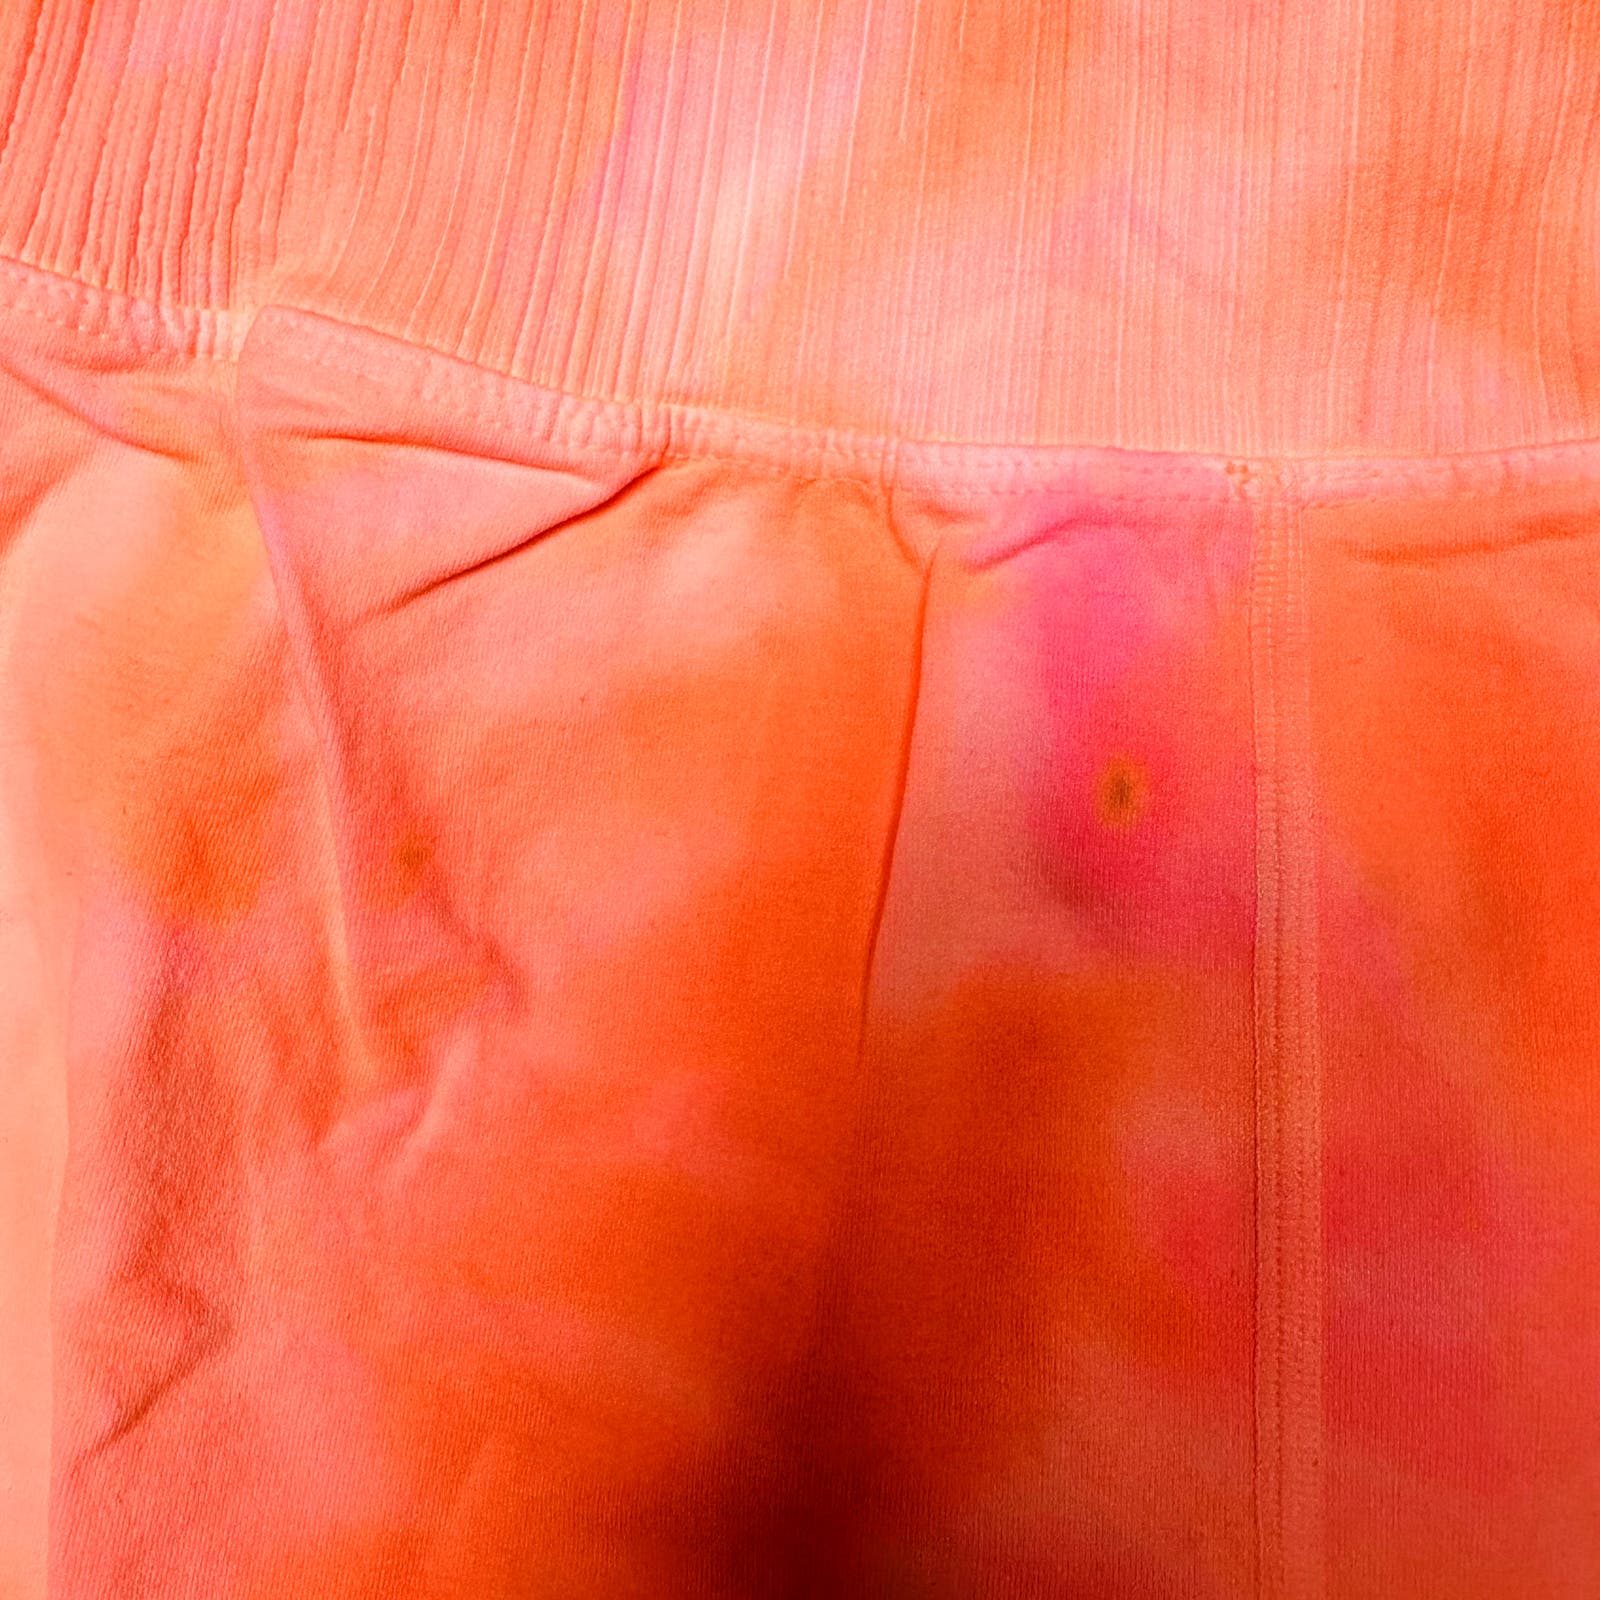 Free People Movement NWOT Orange Pink Tie Dye Good Karma Running Shorts